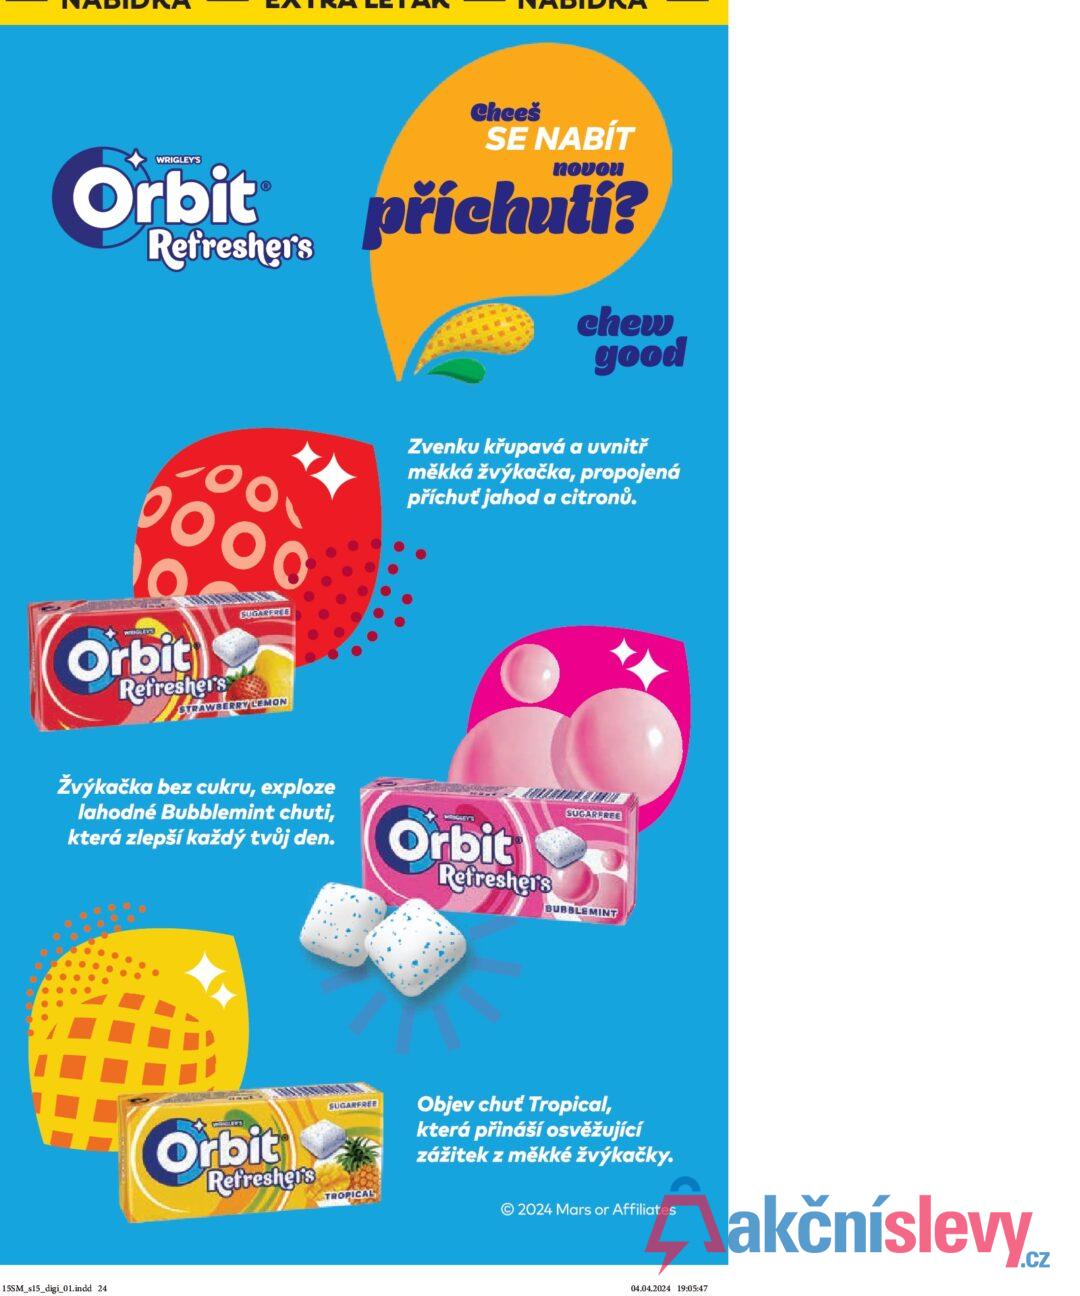 WRIGLEY'S Orbit Ⓡ Refresher's Chceš SE NABÍT novou příchutí? chew good 0000 Orbit Refresher's SUGARFREE STRAWBERRY LEMON Zvenku křupavá a uvnitř měkká žvýkačka, propojená příchuť jahod a citronů. Žvýkačka bez cukru, exploze lahodné Bubblemint chuti, která zlepší každý tvůj den. WOSGLEYS Orbit Refresher's SUGARFREE BUBBLEMINT 15SM_s15_digi_01.indd 24 Orbit Refresher's SUGARFREE TROPICAL Objev chuť Tropical, která přináší osvěžující zážitek z měkké žvýkačky. © 2024 Mars or Affiliates 04.04.2024 19:05:47